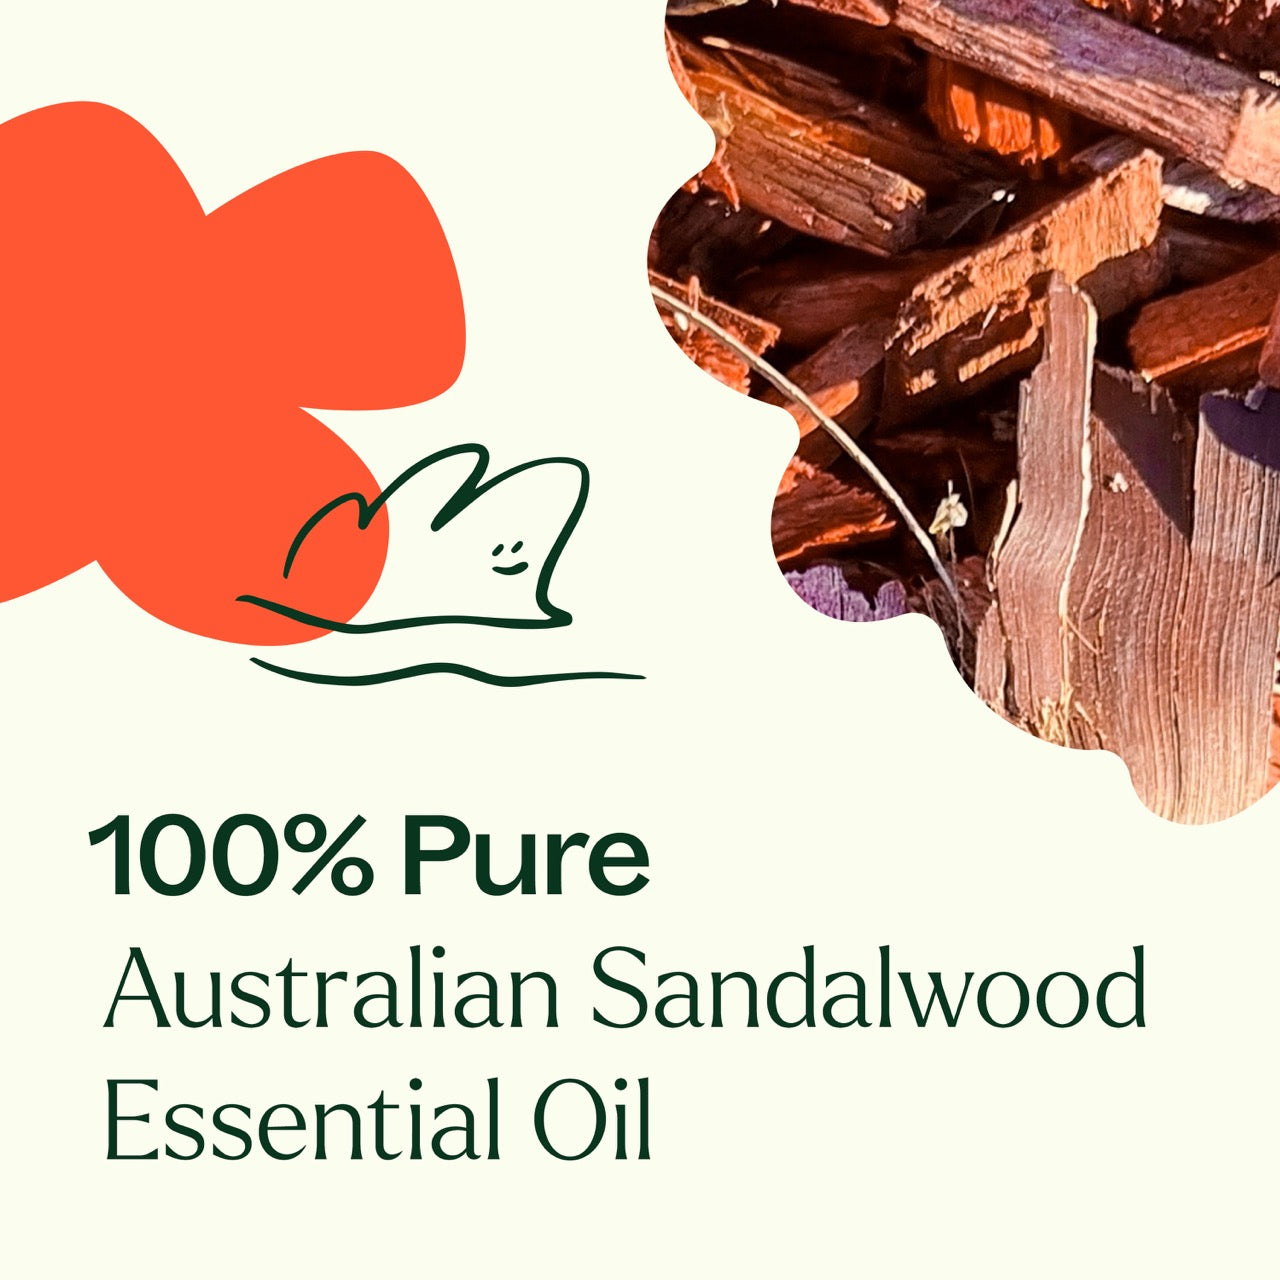 Australian Sandalwood Essential Oil is 100% pure 